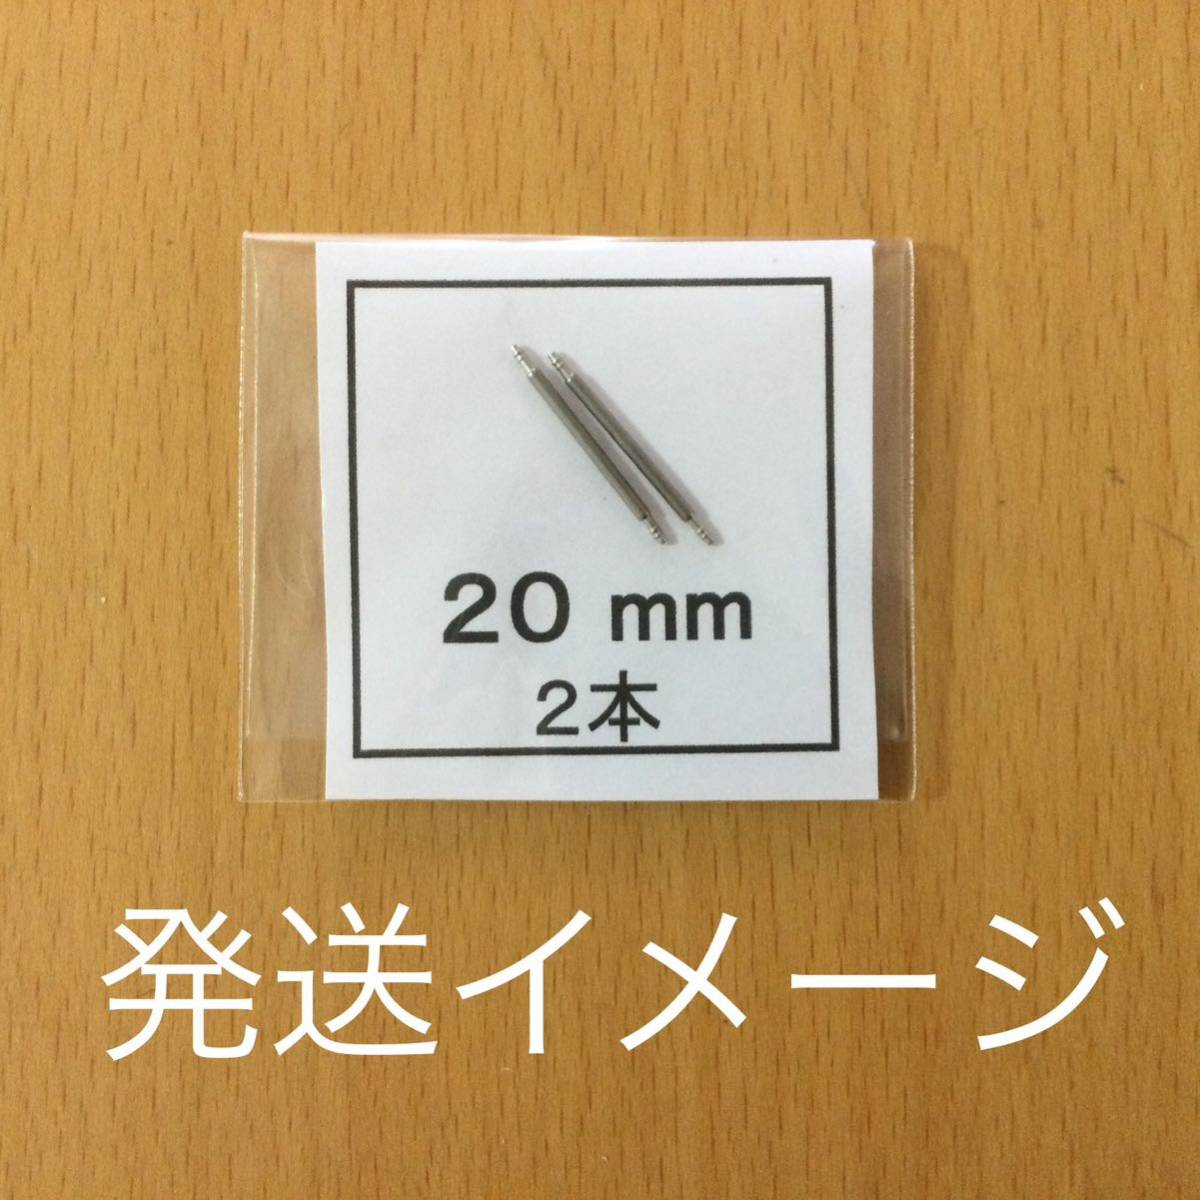  наручные часы spring палка spring палка 2 шт 13mm для 60 иен стоимость доставки 63 иен быстрое решение немедленная отправка изображение 3 листов y